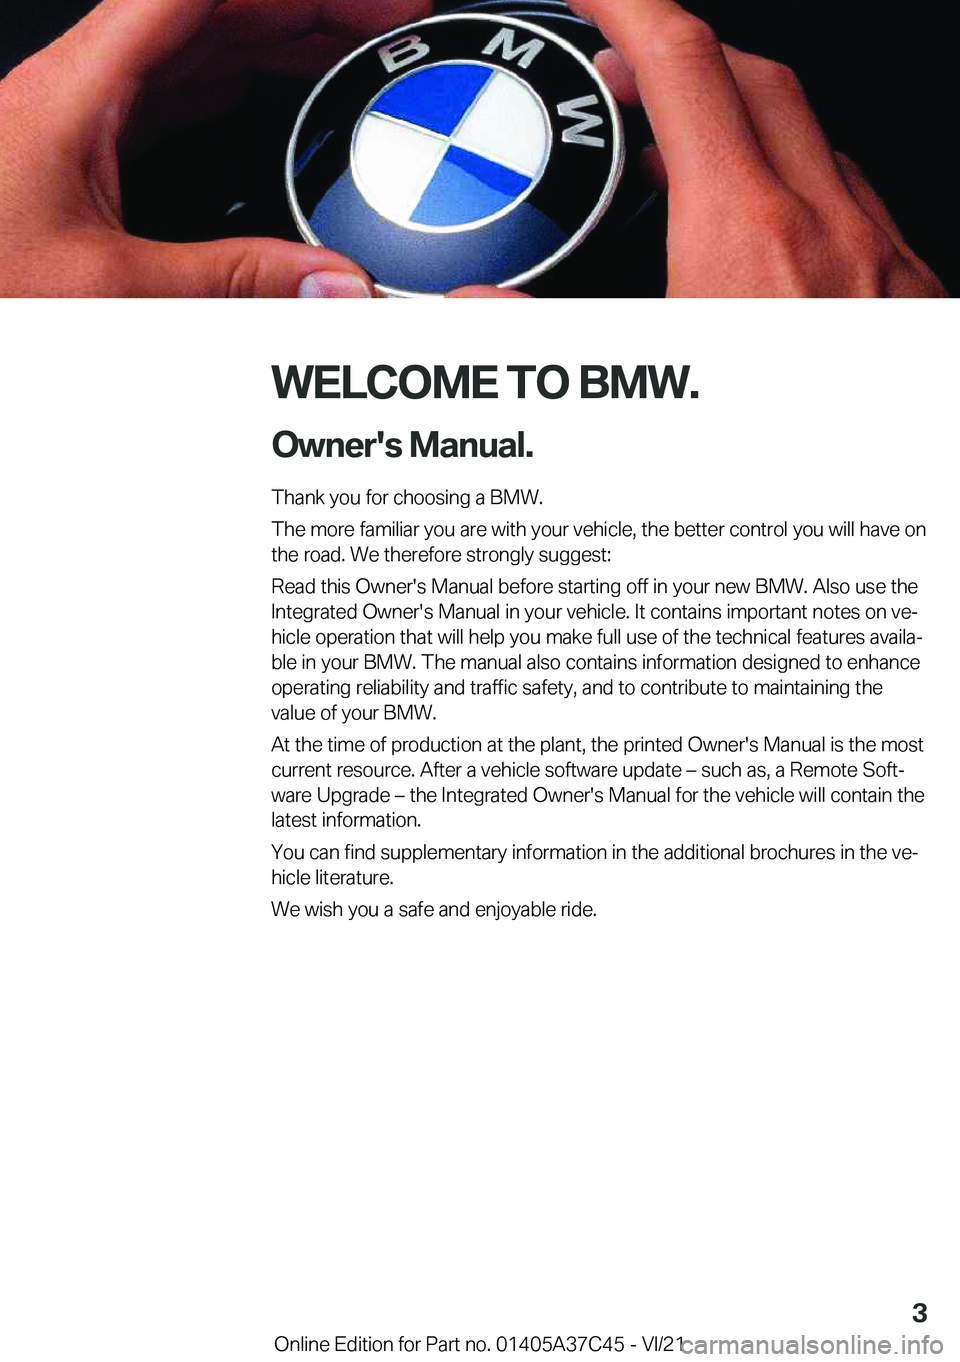 BMW X4 M 2022  Owners Manual �W�E�L�C�O�M�E��T�O��B�M�W�.�O�w�n�e�r�'�s��M�a�n�u�a�l�.
�T�h�a�n�k��y�o�u��f�o�r��c�h�o�o�s�i�n�g��a��B�M�W�.
�T�h�e��m�o�r�e��f�a�m�i�l�i�a�r��y�o�u��a�r�e��w�i�t�h��y�o�u�r��v�e